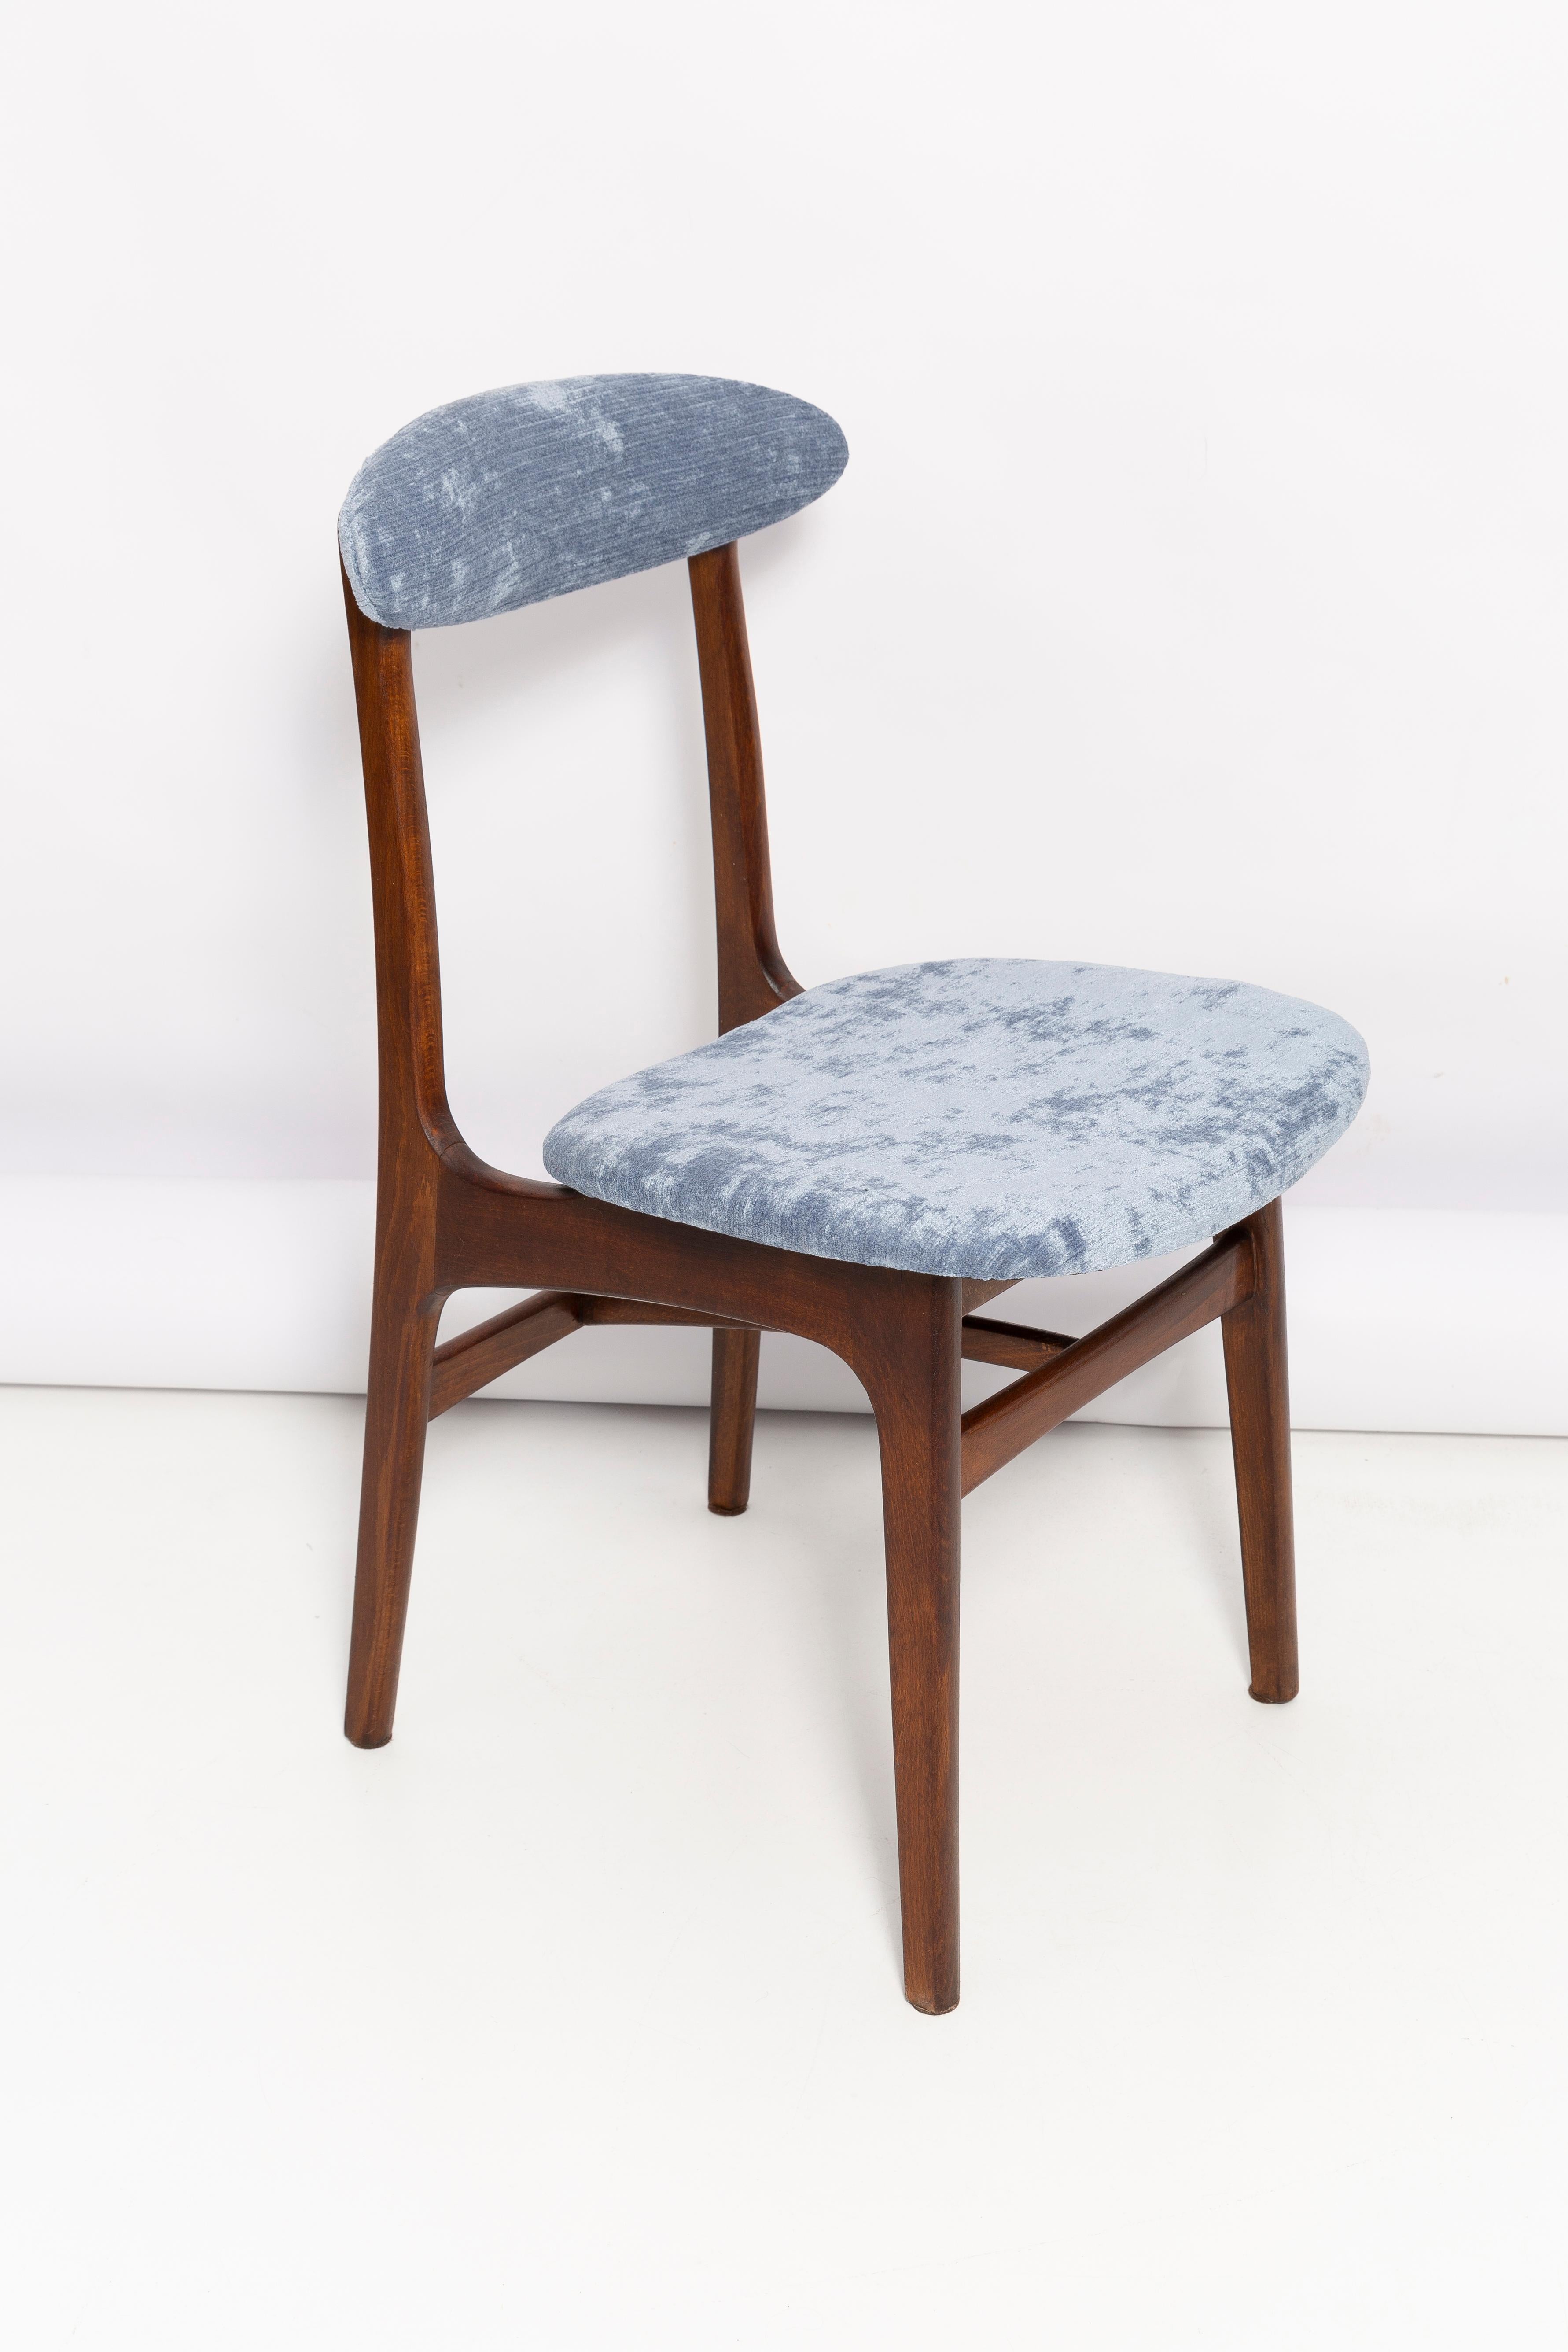 Leichte Form eines schönen Vintage-Stuhls, entworfen von Prof. Rajmund Halas. Er wurde aus Buchenholz gefertigt. Entworfen und hergestellt in Polen. Der Stuhl wurde komplett neu gepolstert, die Holzarbeiten wurden aufgefrischt. Die Sitze und